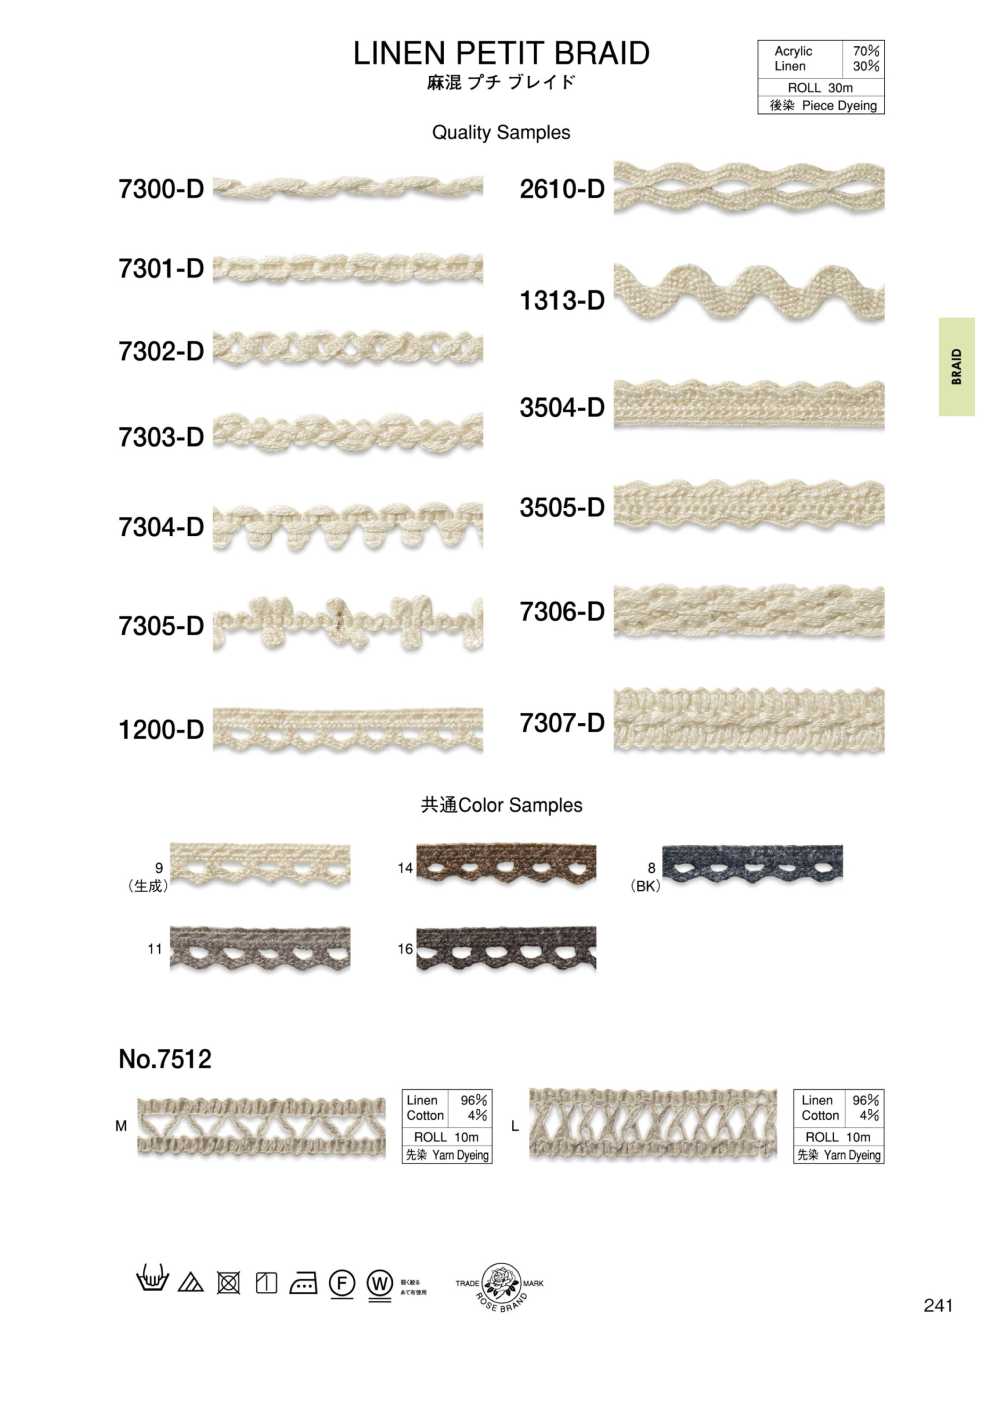 7305-D Linen Blend Petite Braid[Ribbon Tape Cord] ROSE BRAND (Marushin)